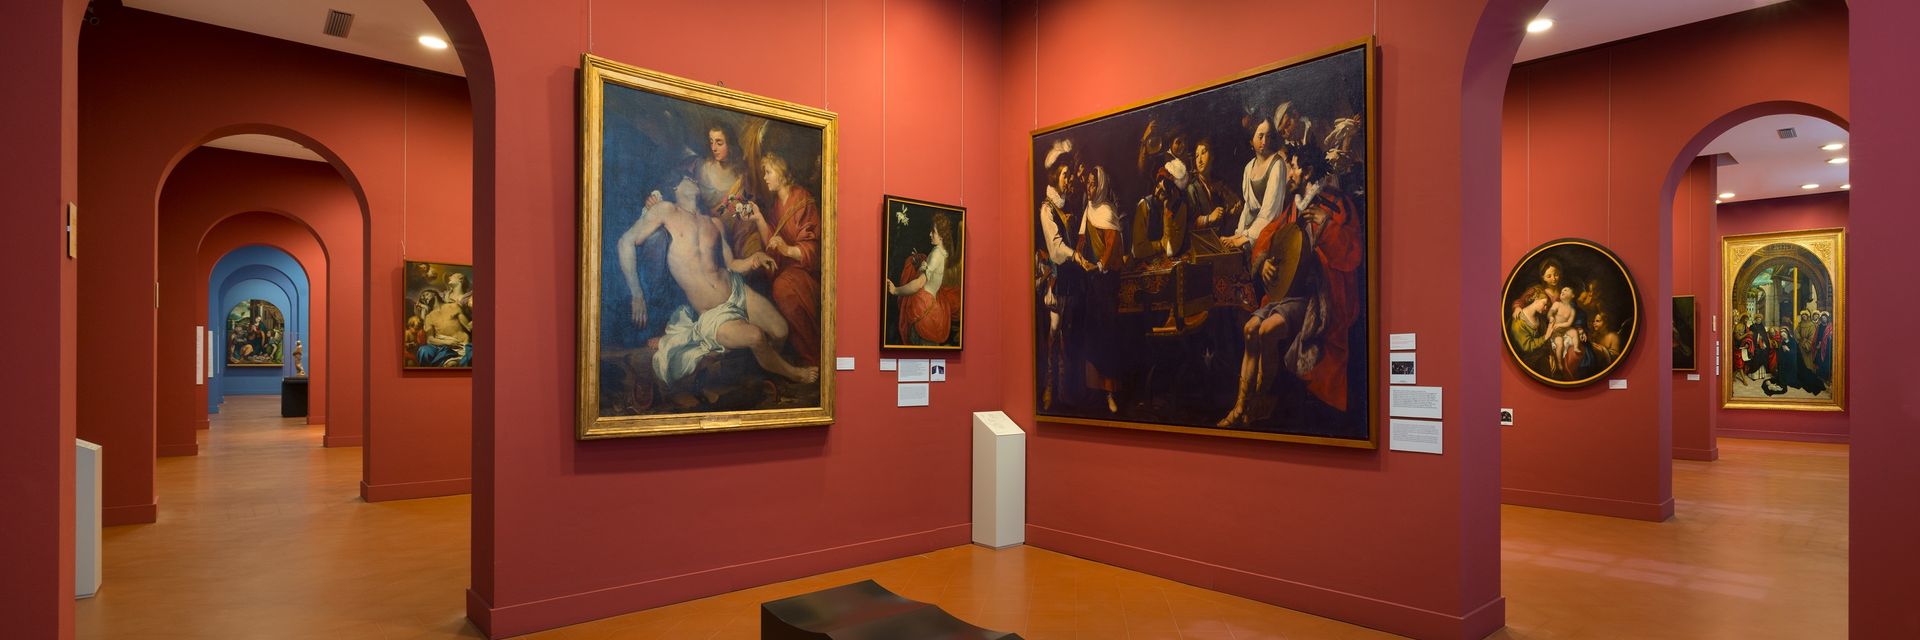 Pinakothek der Albertina Akademie der Bildenden Künste